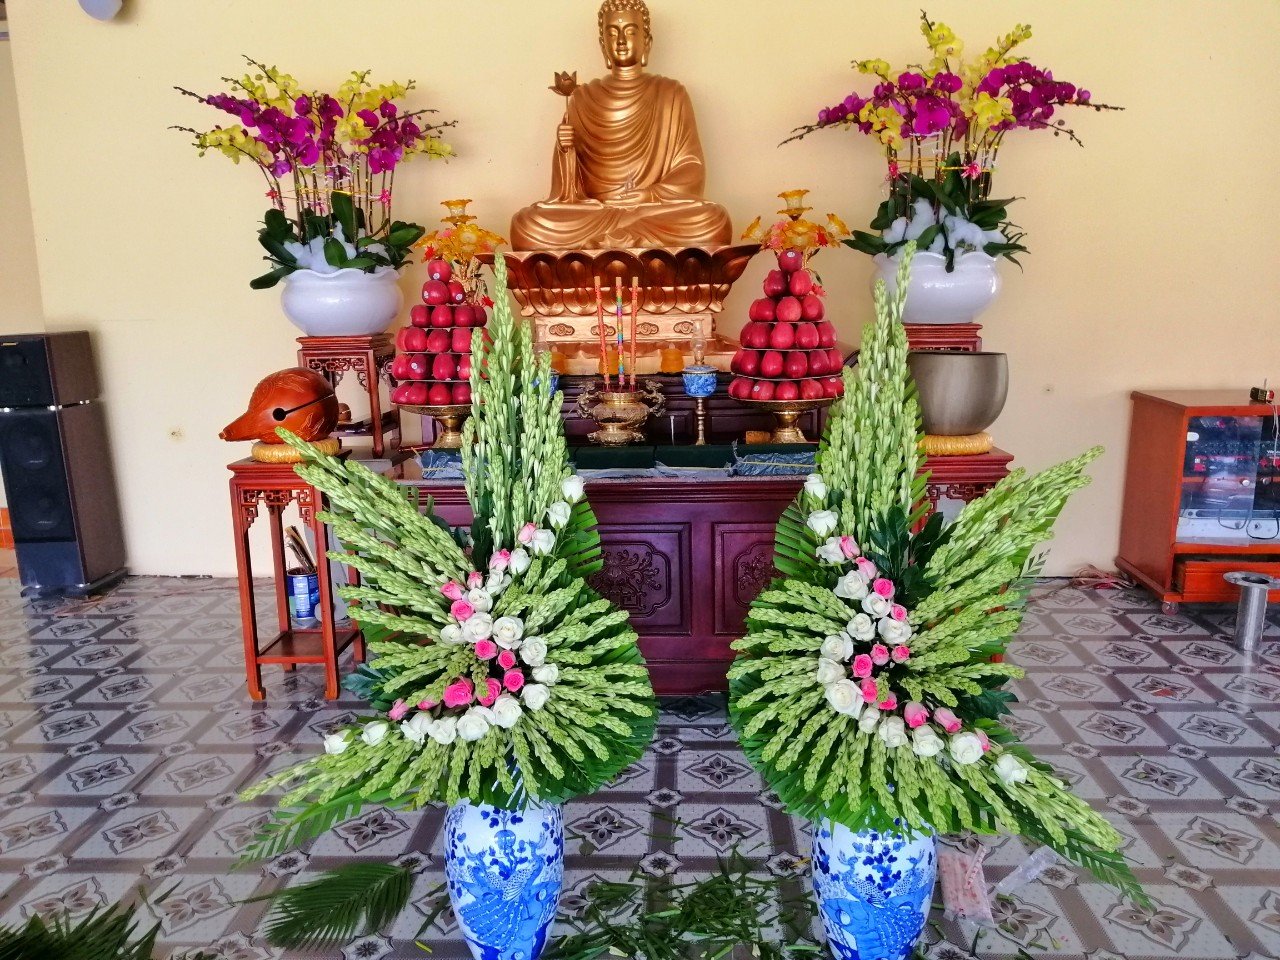 Dạy cắm hoa dâng Phật: Nếu bạn có niềm đam mê về cắm hoa và tôn giáo, đừng bỏ lỡ hình ảnh này. Hãy cùng tìm hiểu cách cắm hoa dâng Phật đầy tâm linh và ý nghĩa. Bạn sẽ tìm thấy những bông hoa tươi tắn đầy màu sắc với những ý nghĩa đặc biệt dành cho tín đồ Phật tử.